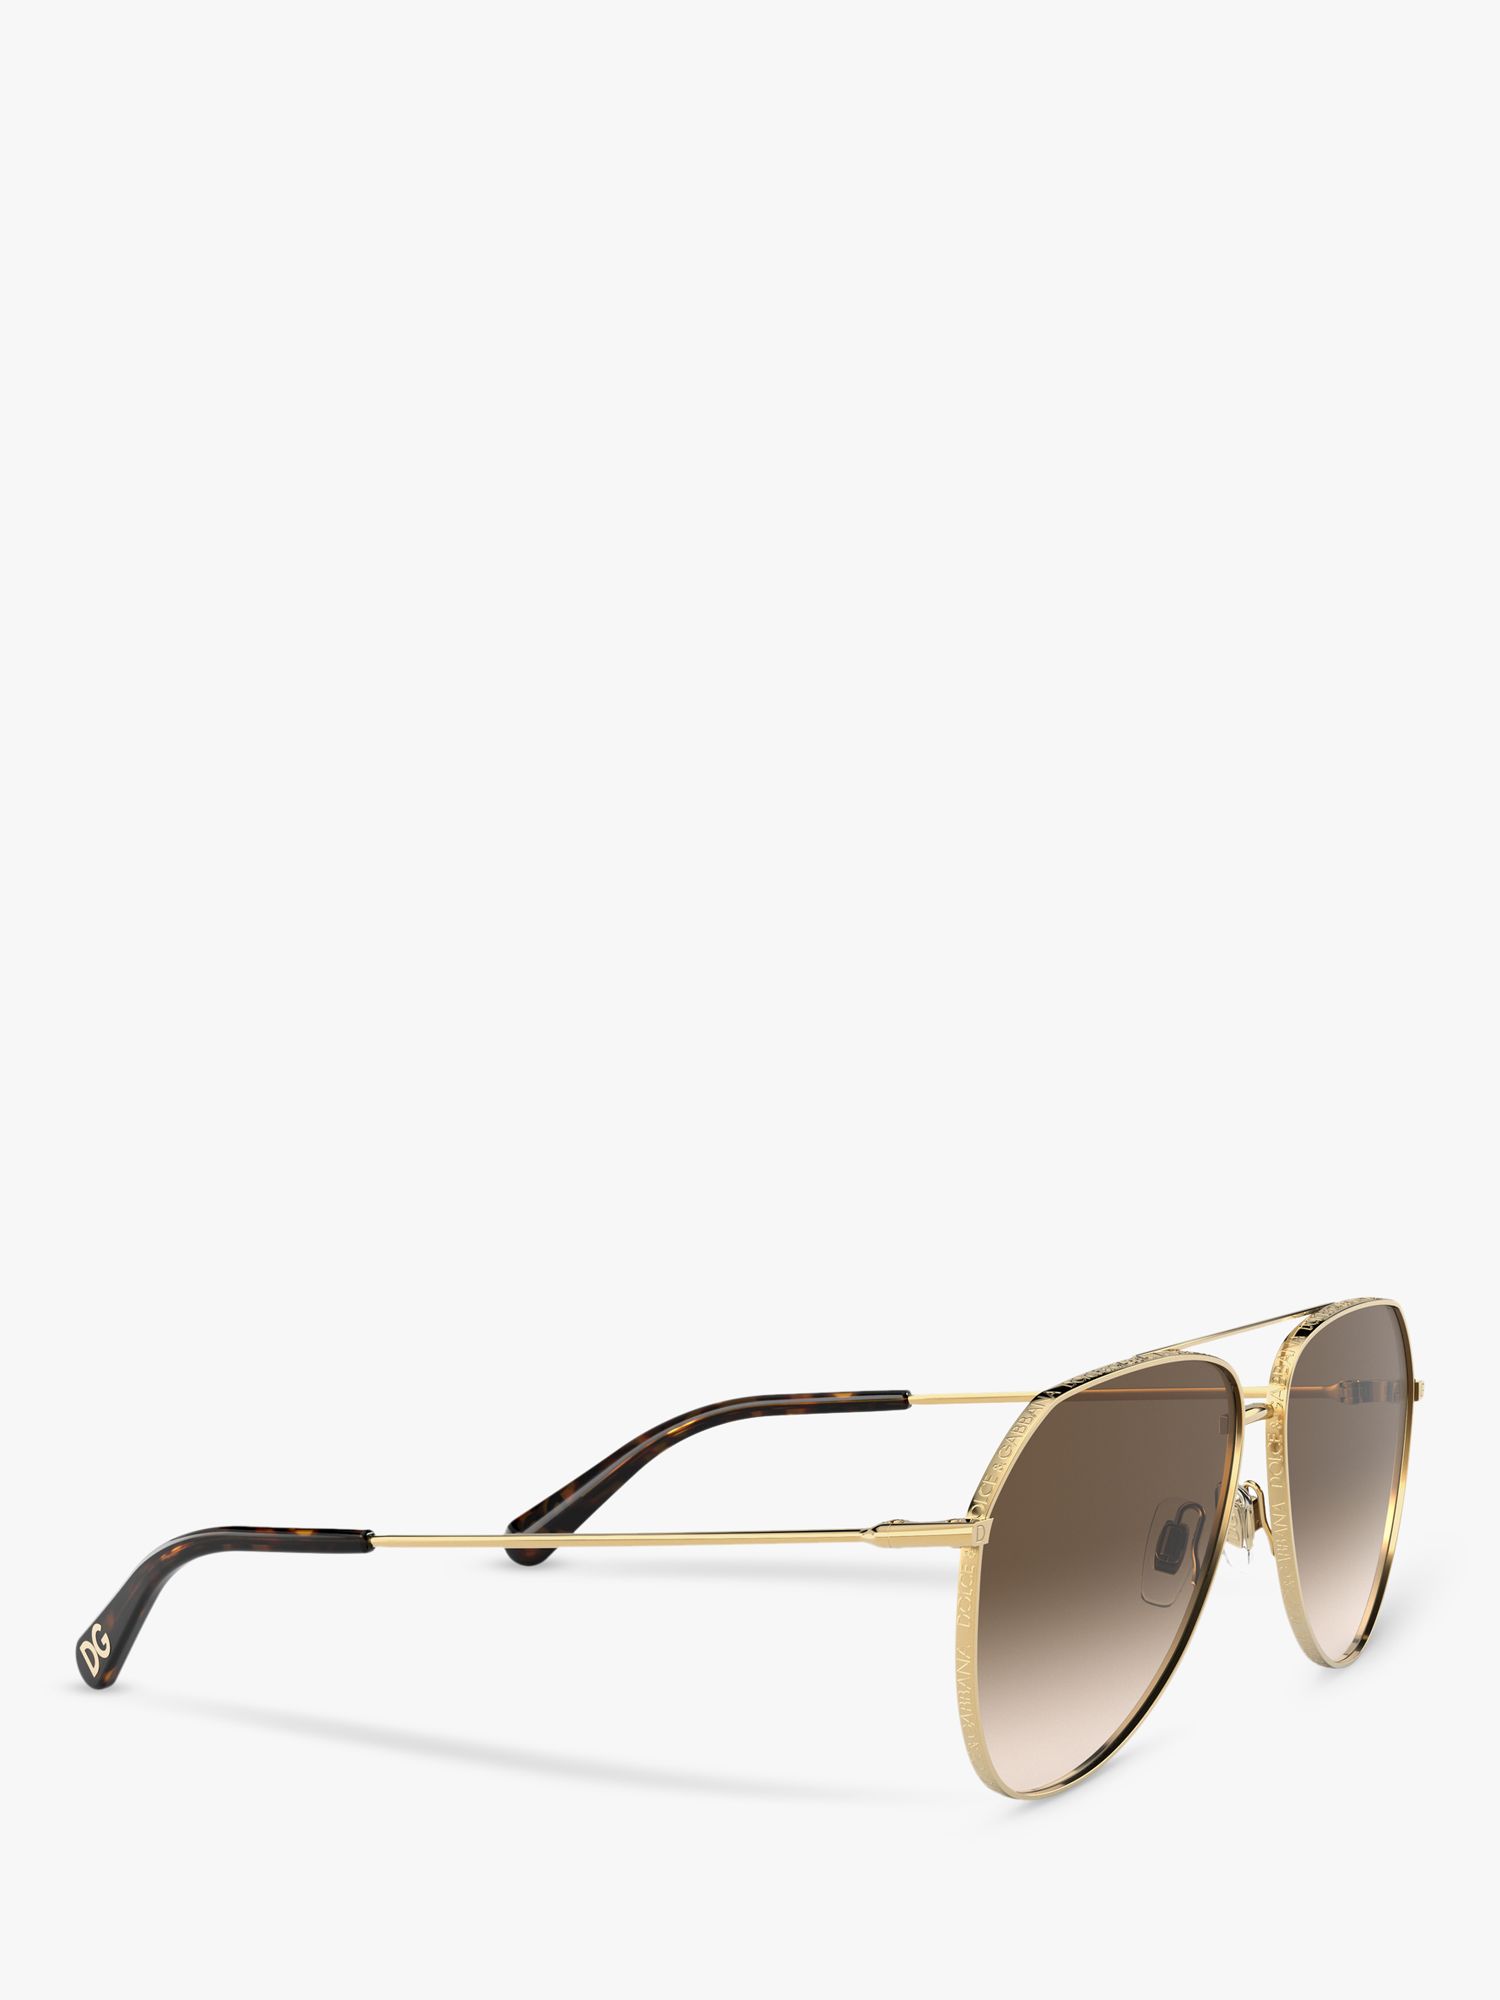 dolce and gabbana women's aviator sunglasses